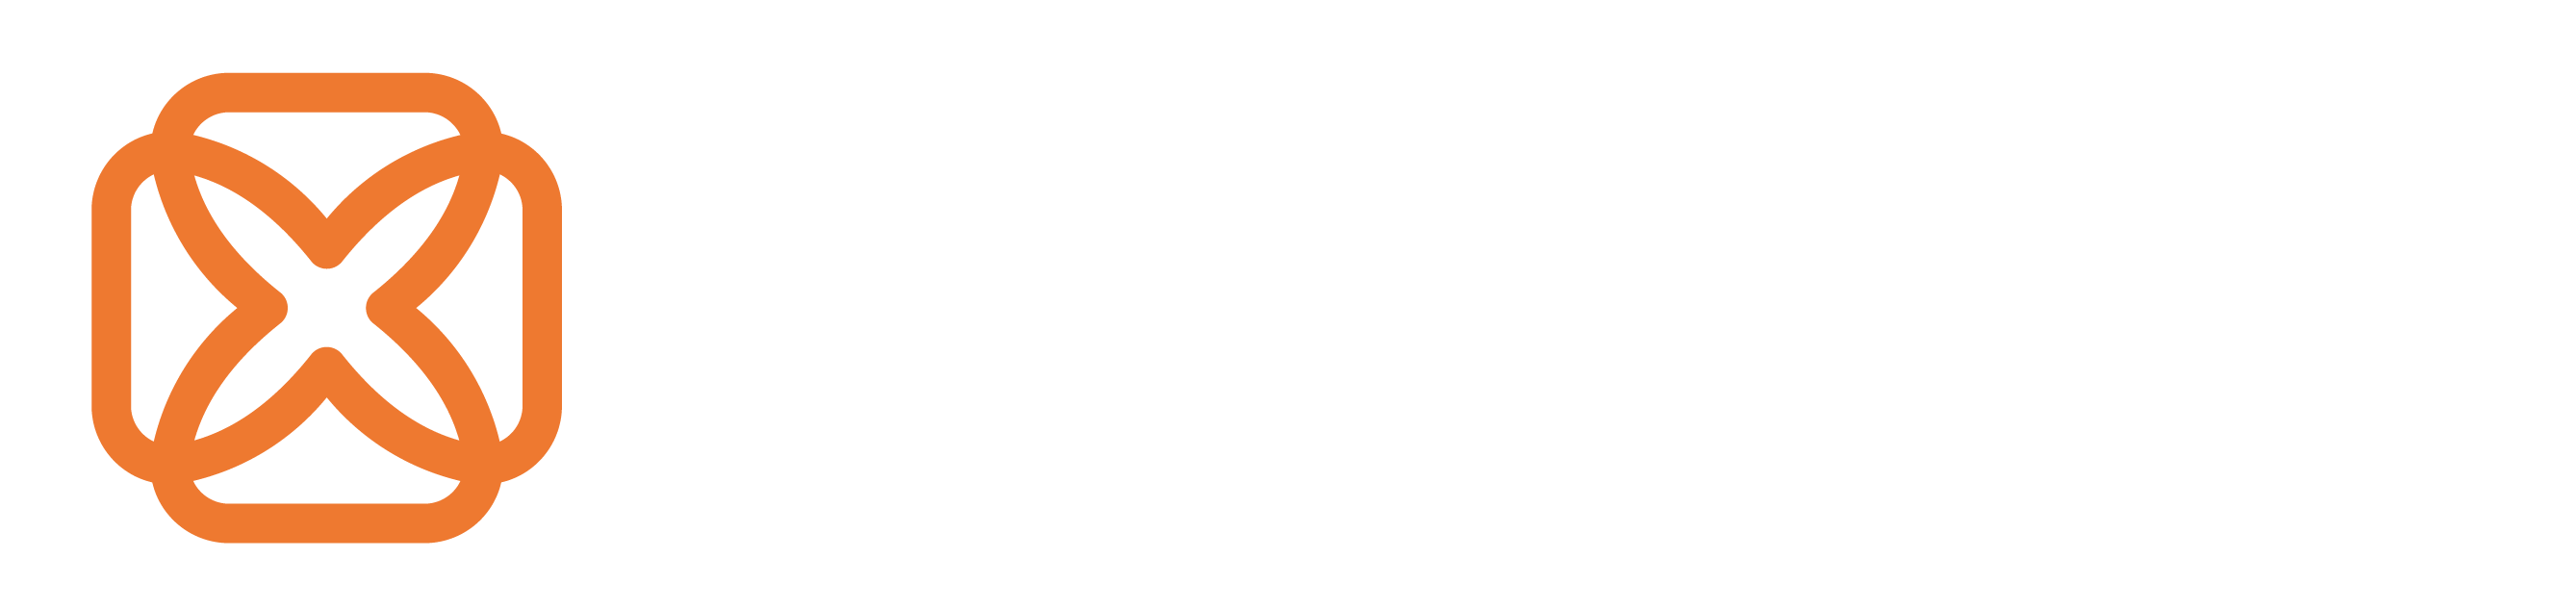 Plastech